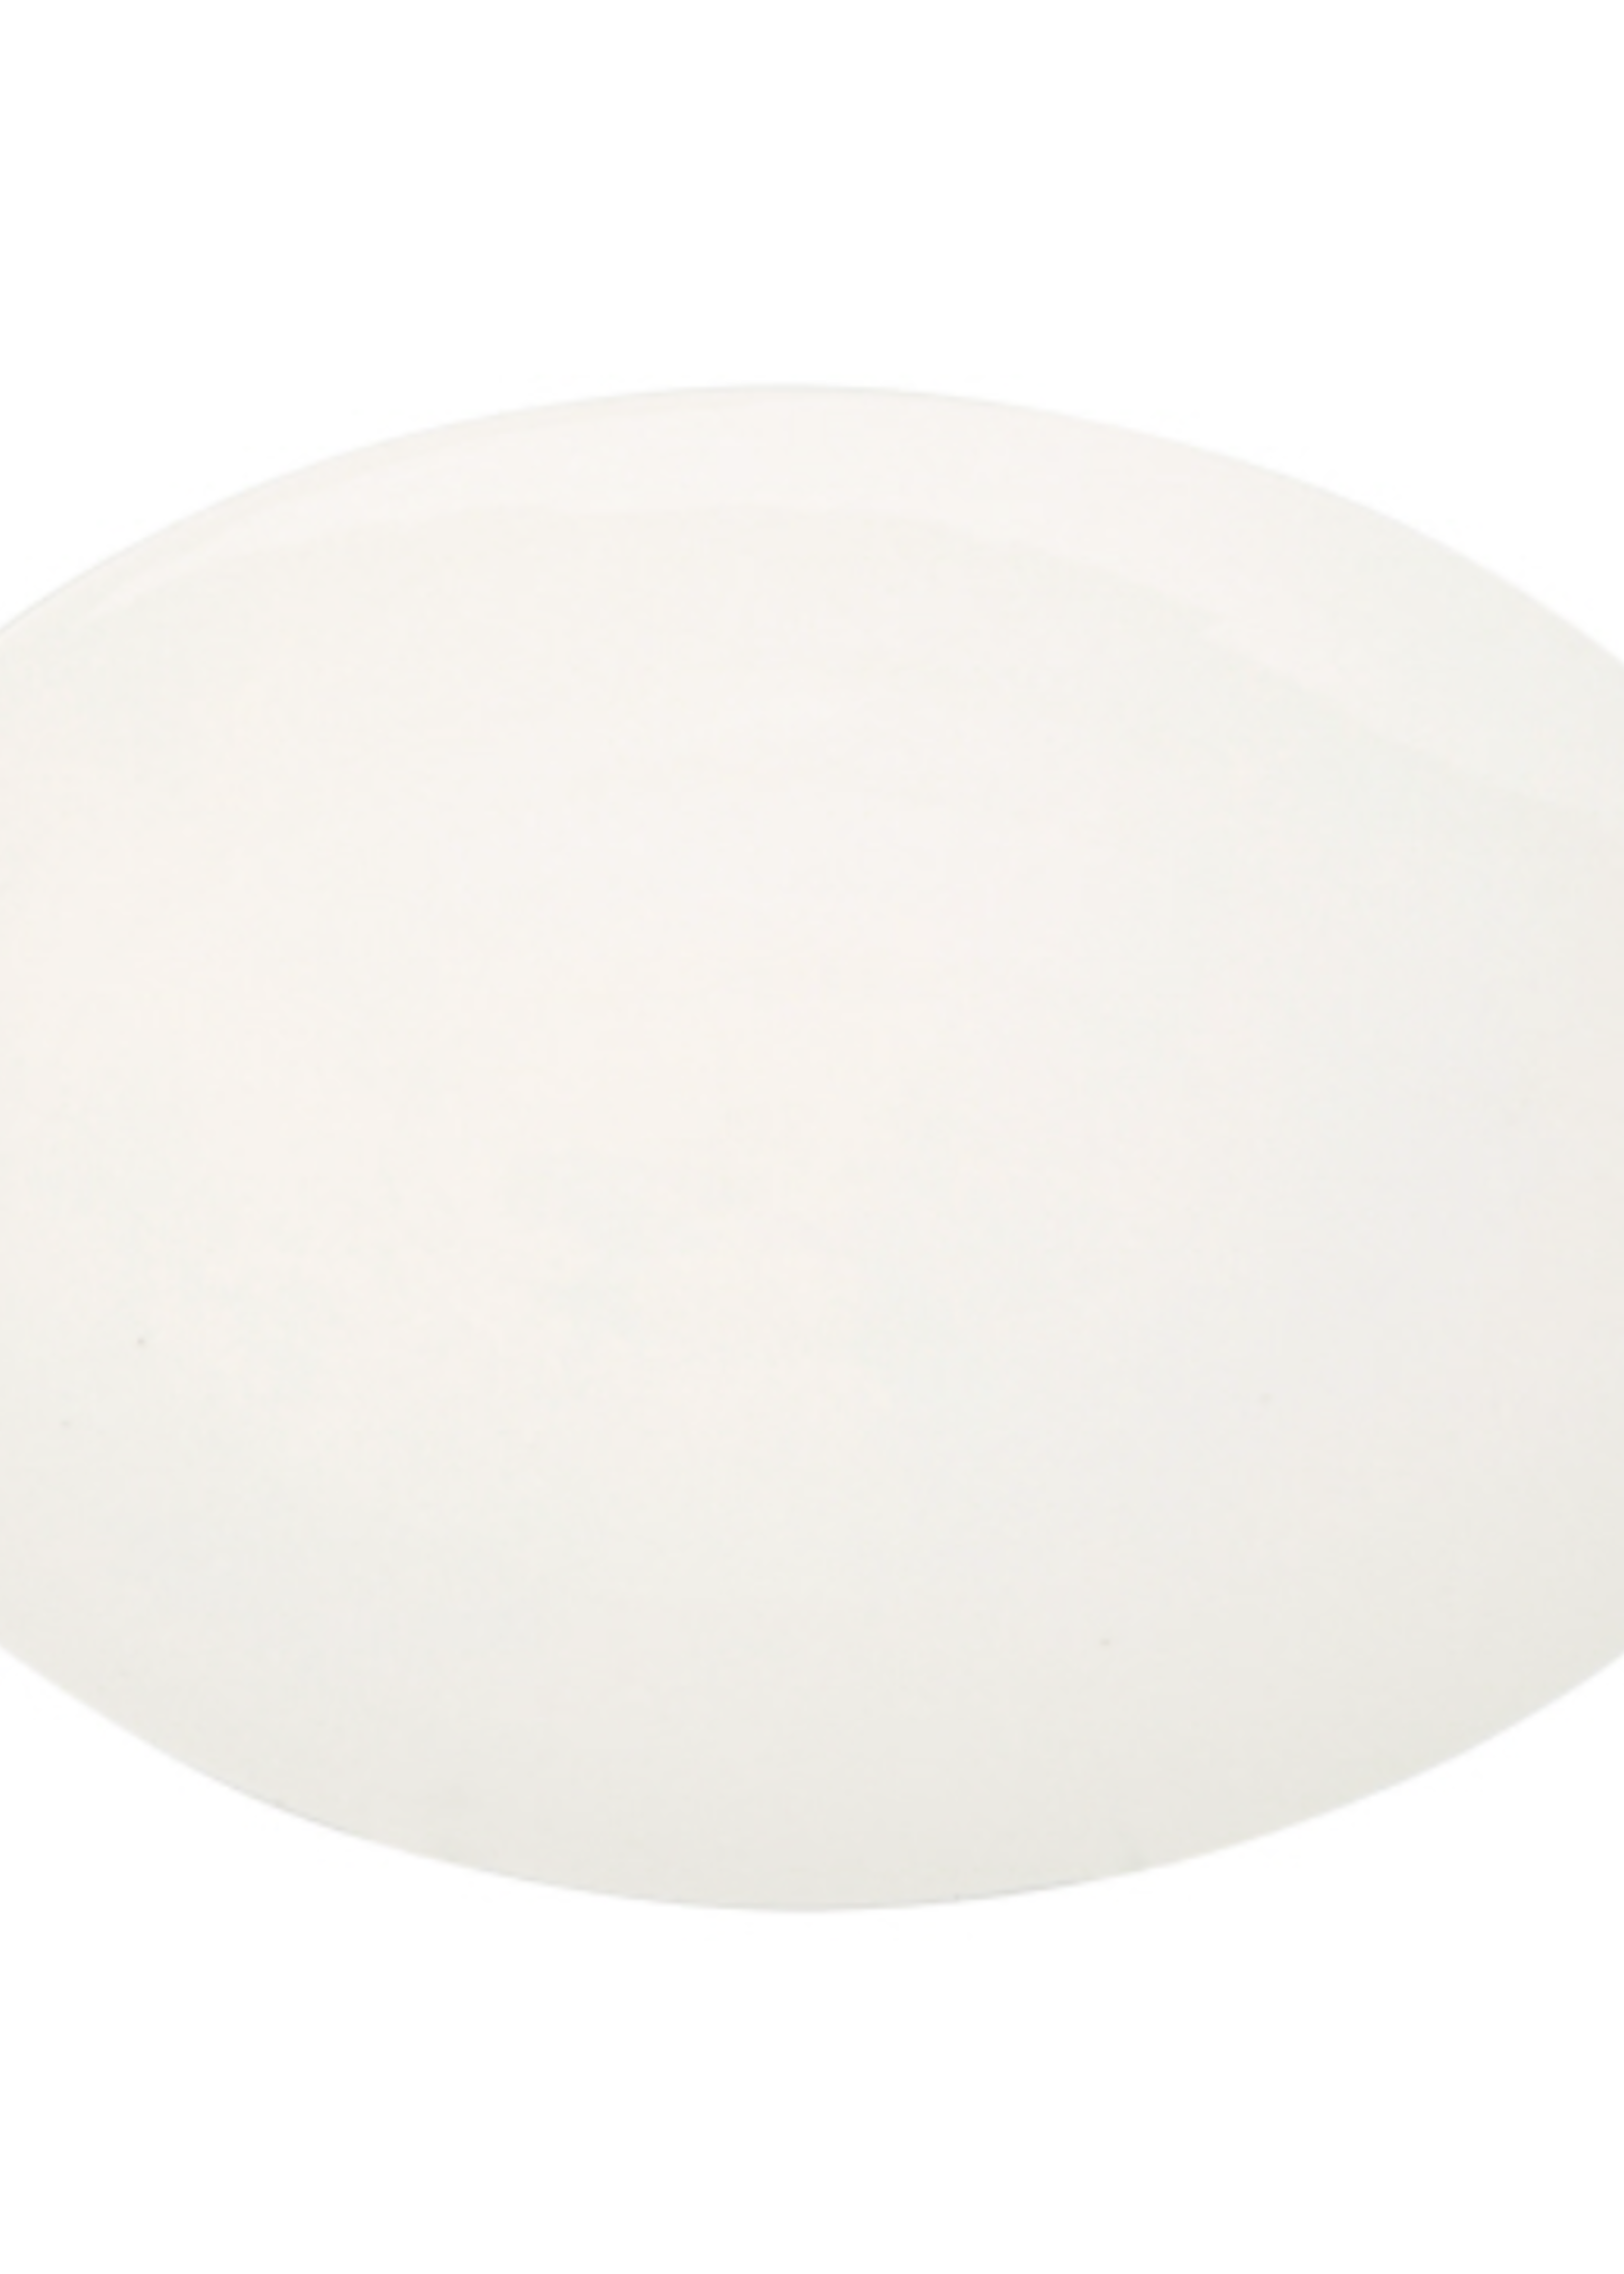 Home Essentials 8"H Pescara White Porcelain Coupe Dessert Plate